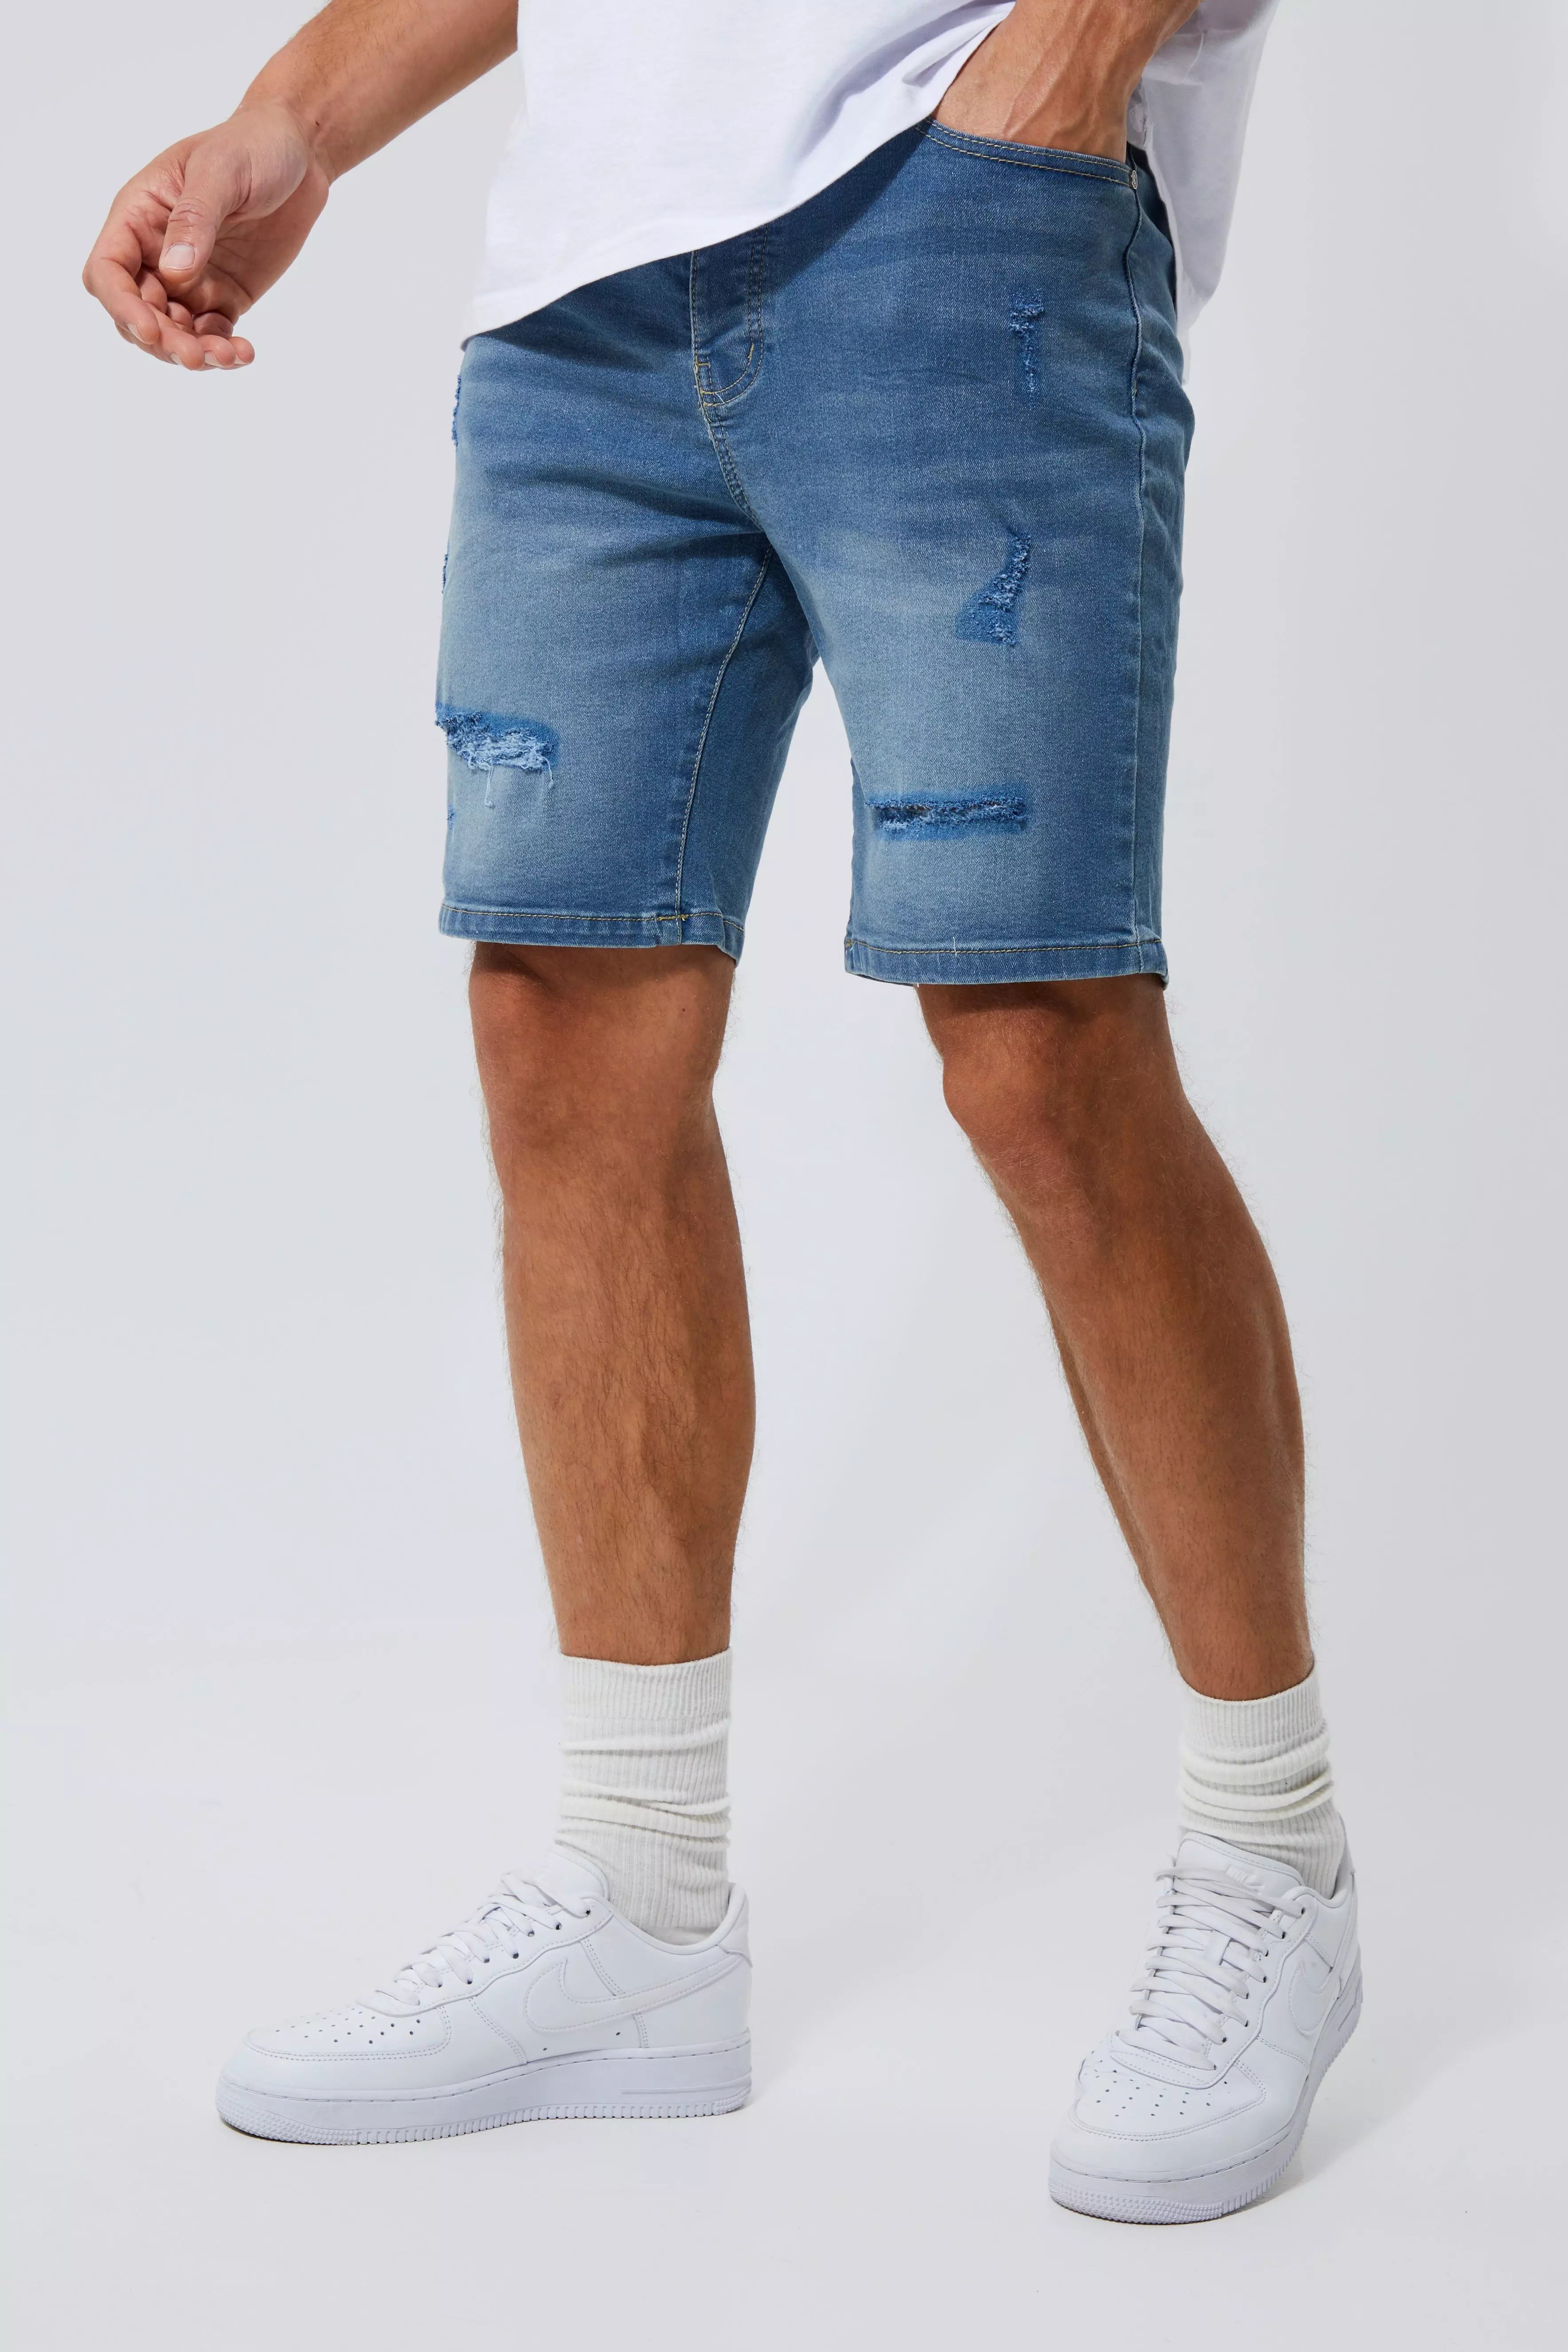 Tall Skinny Stretch Distressed Jean Shorts Light blue